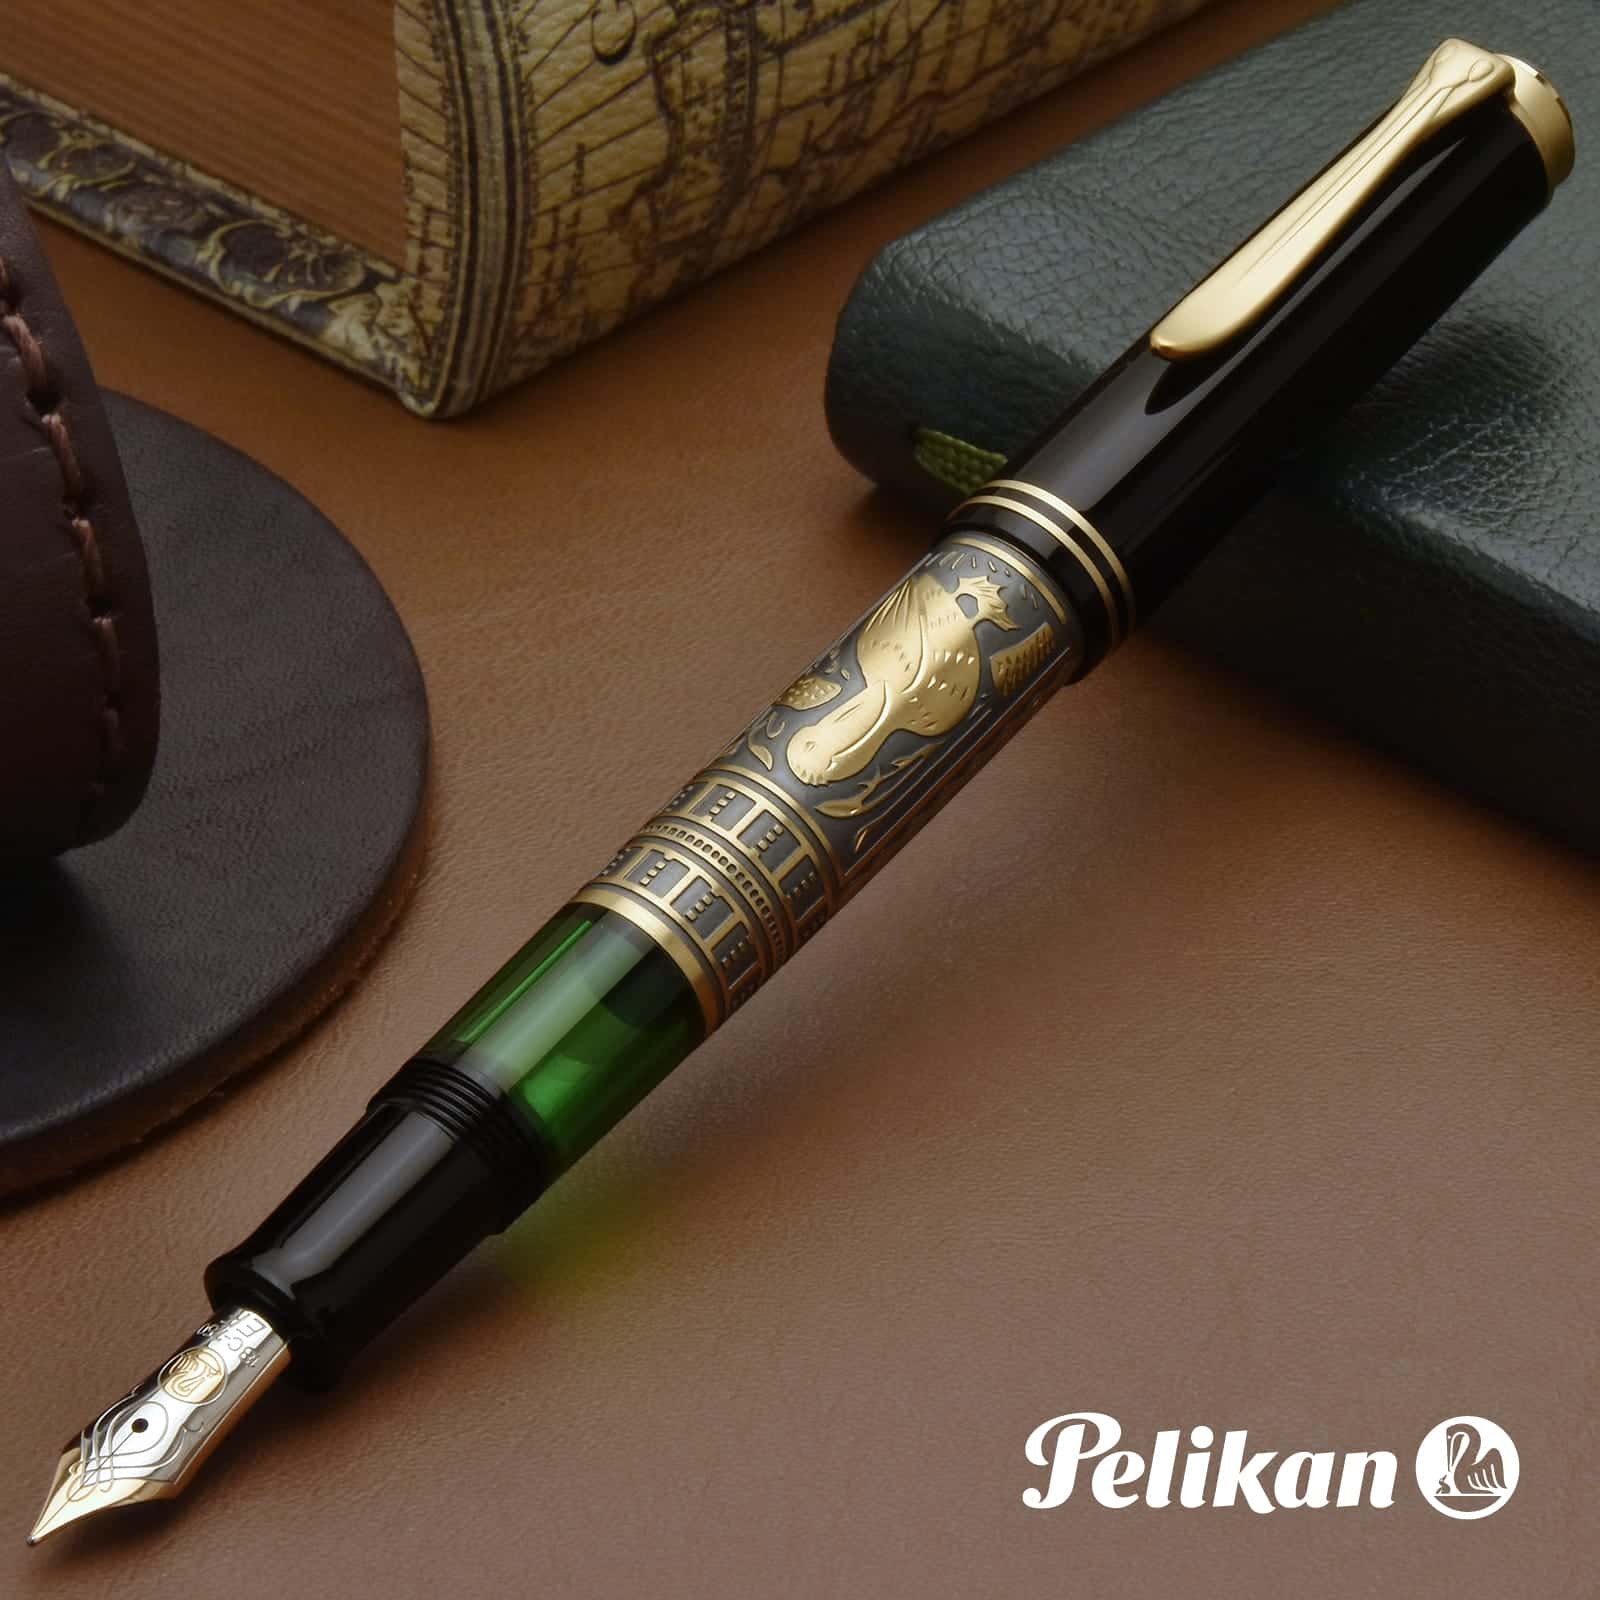 Pelikan ペリカン 万年筆 トレド M700 トレド | 世界の筆記具ペンハウス